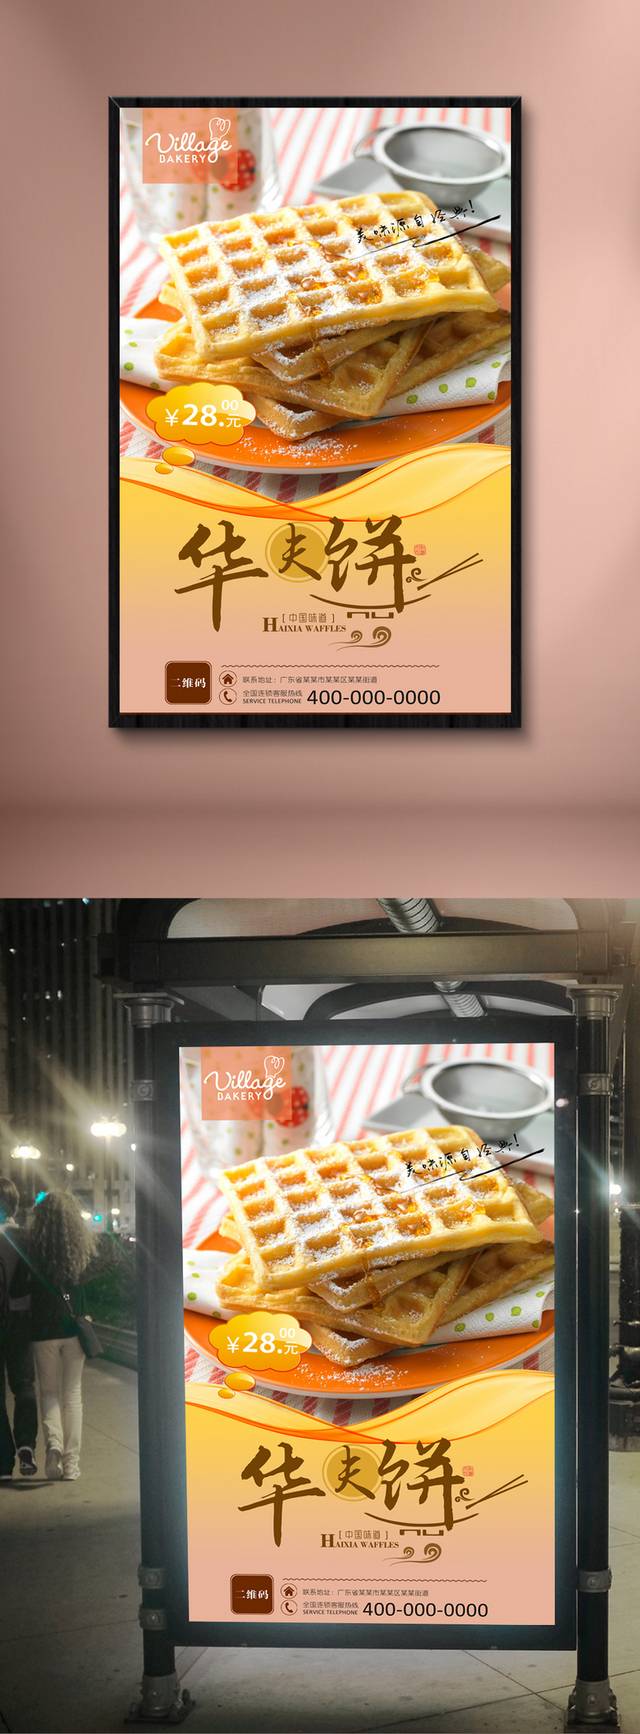 美味华夫饼促销海报设计